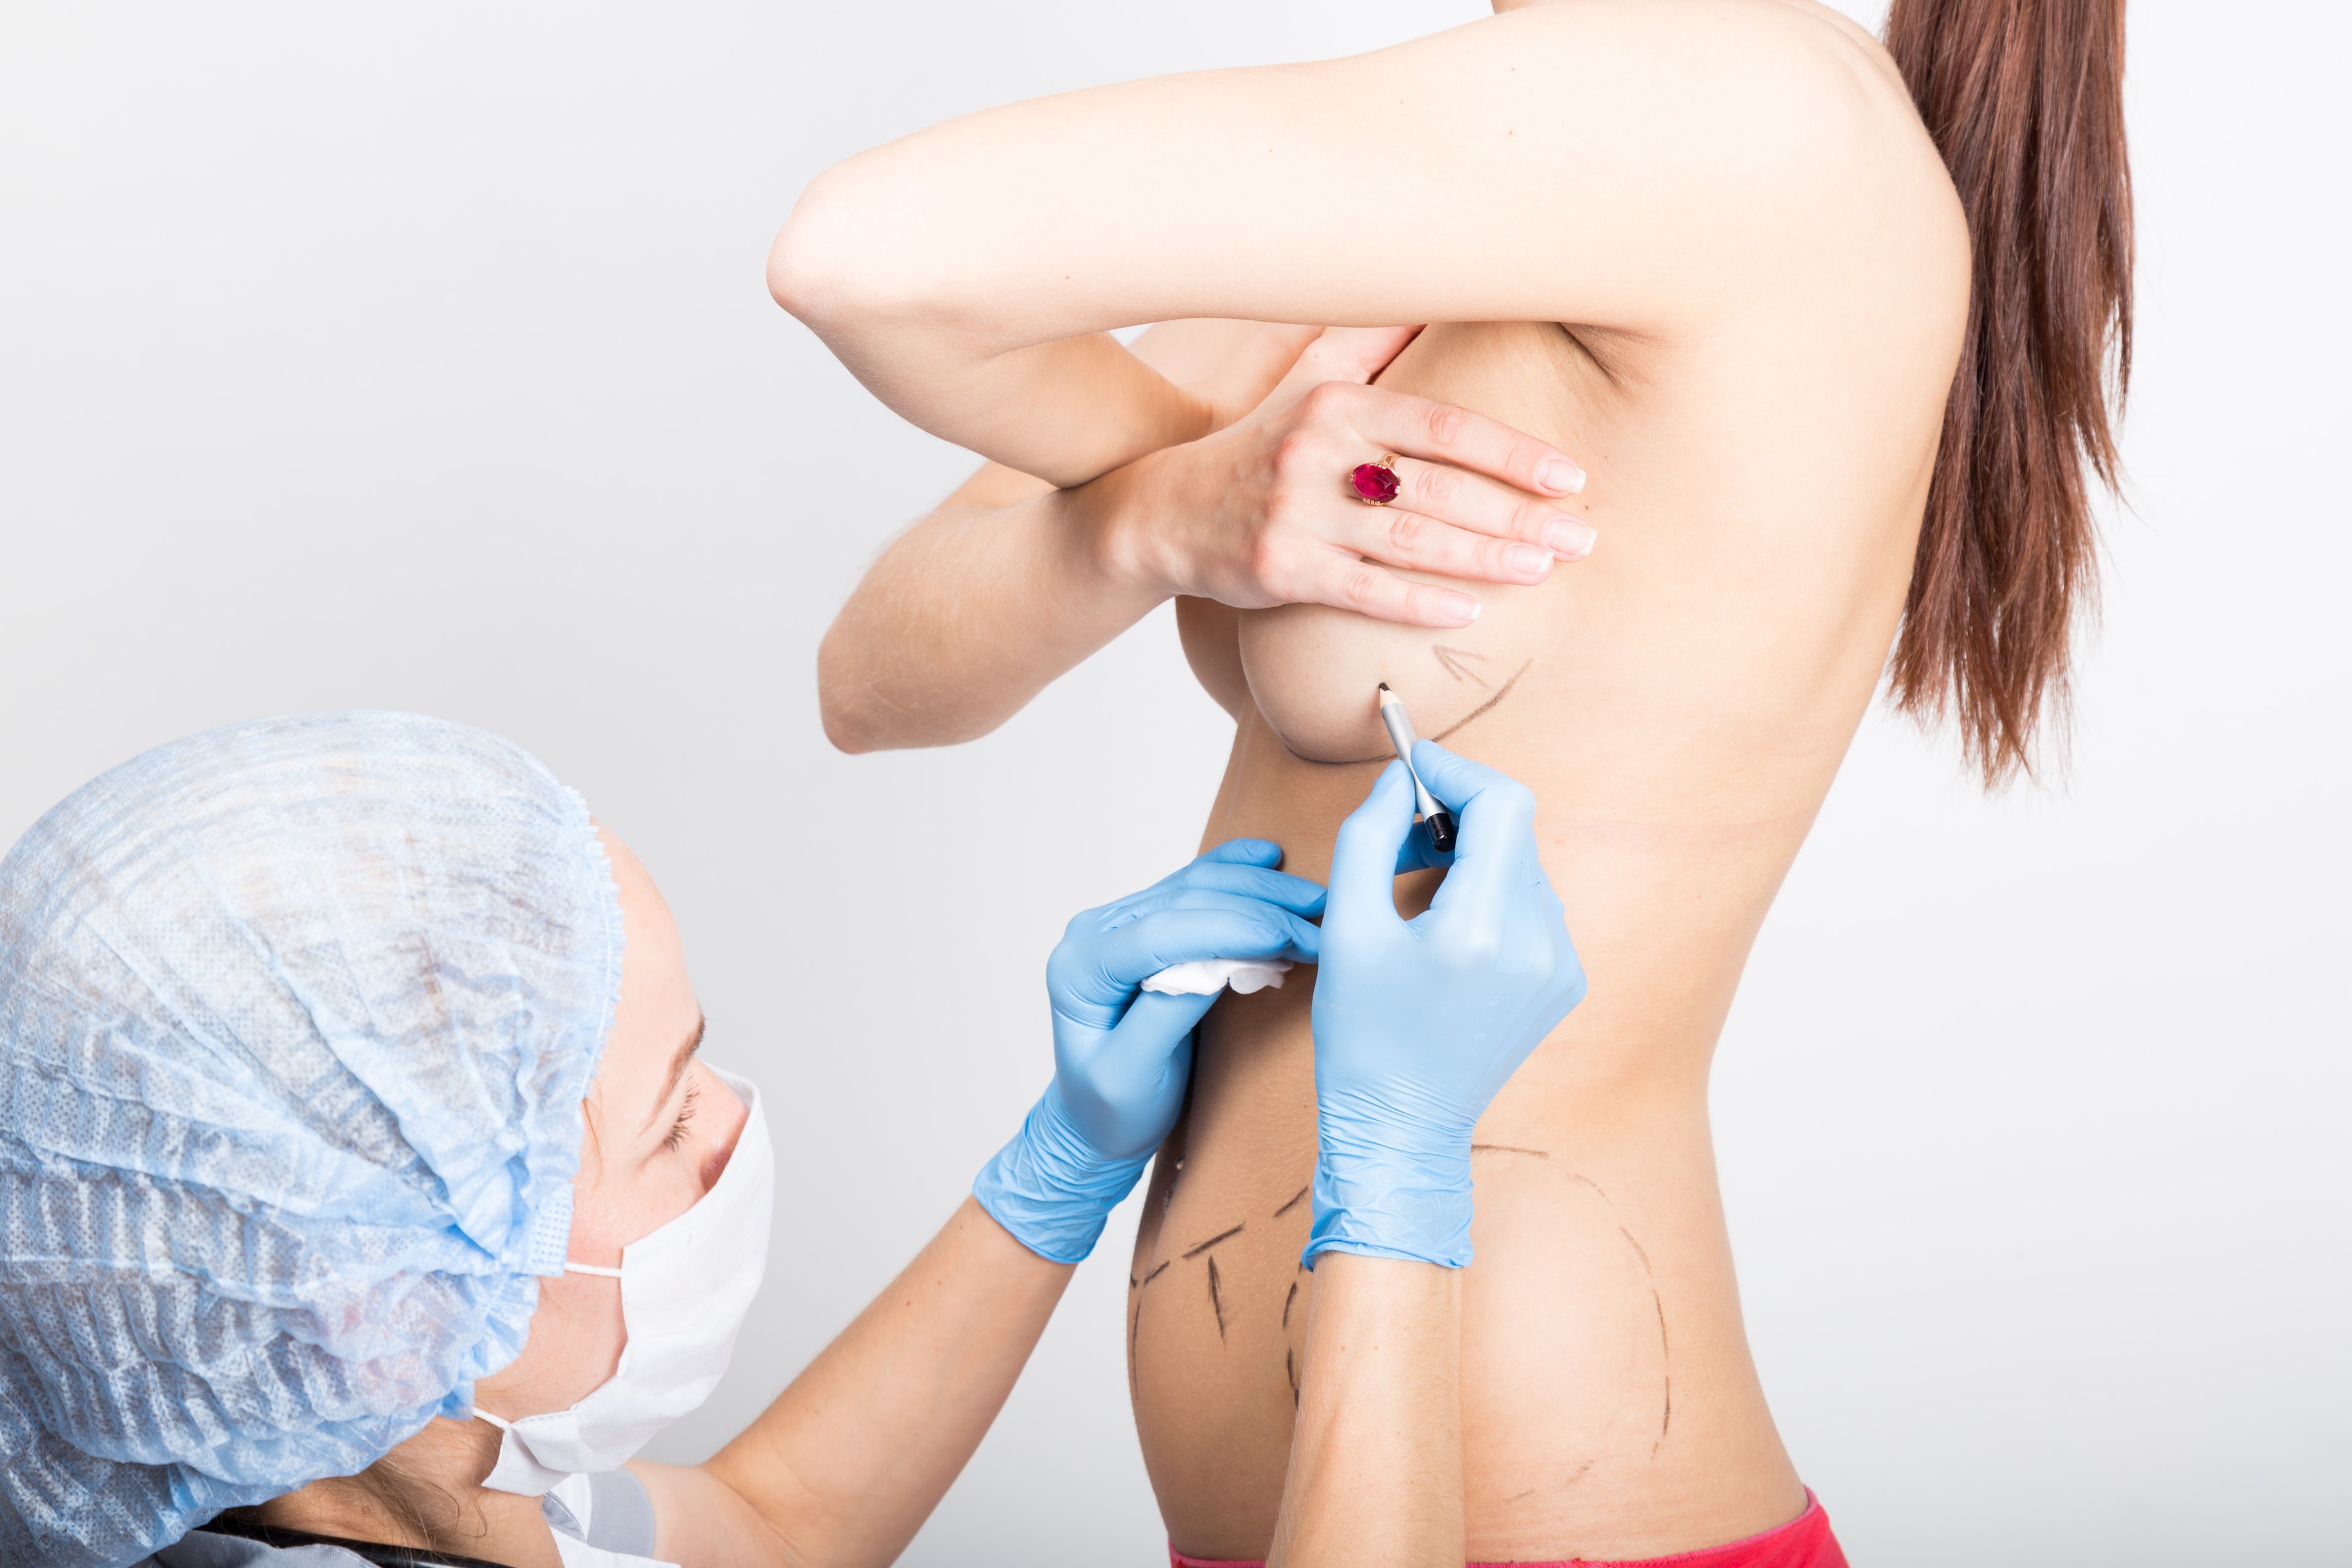 как делают пластическую операцию груди женщин фото 12